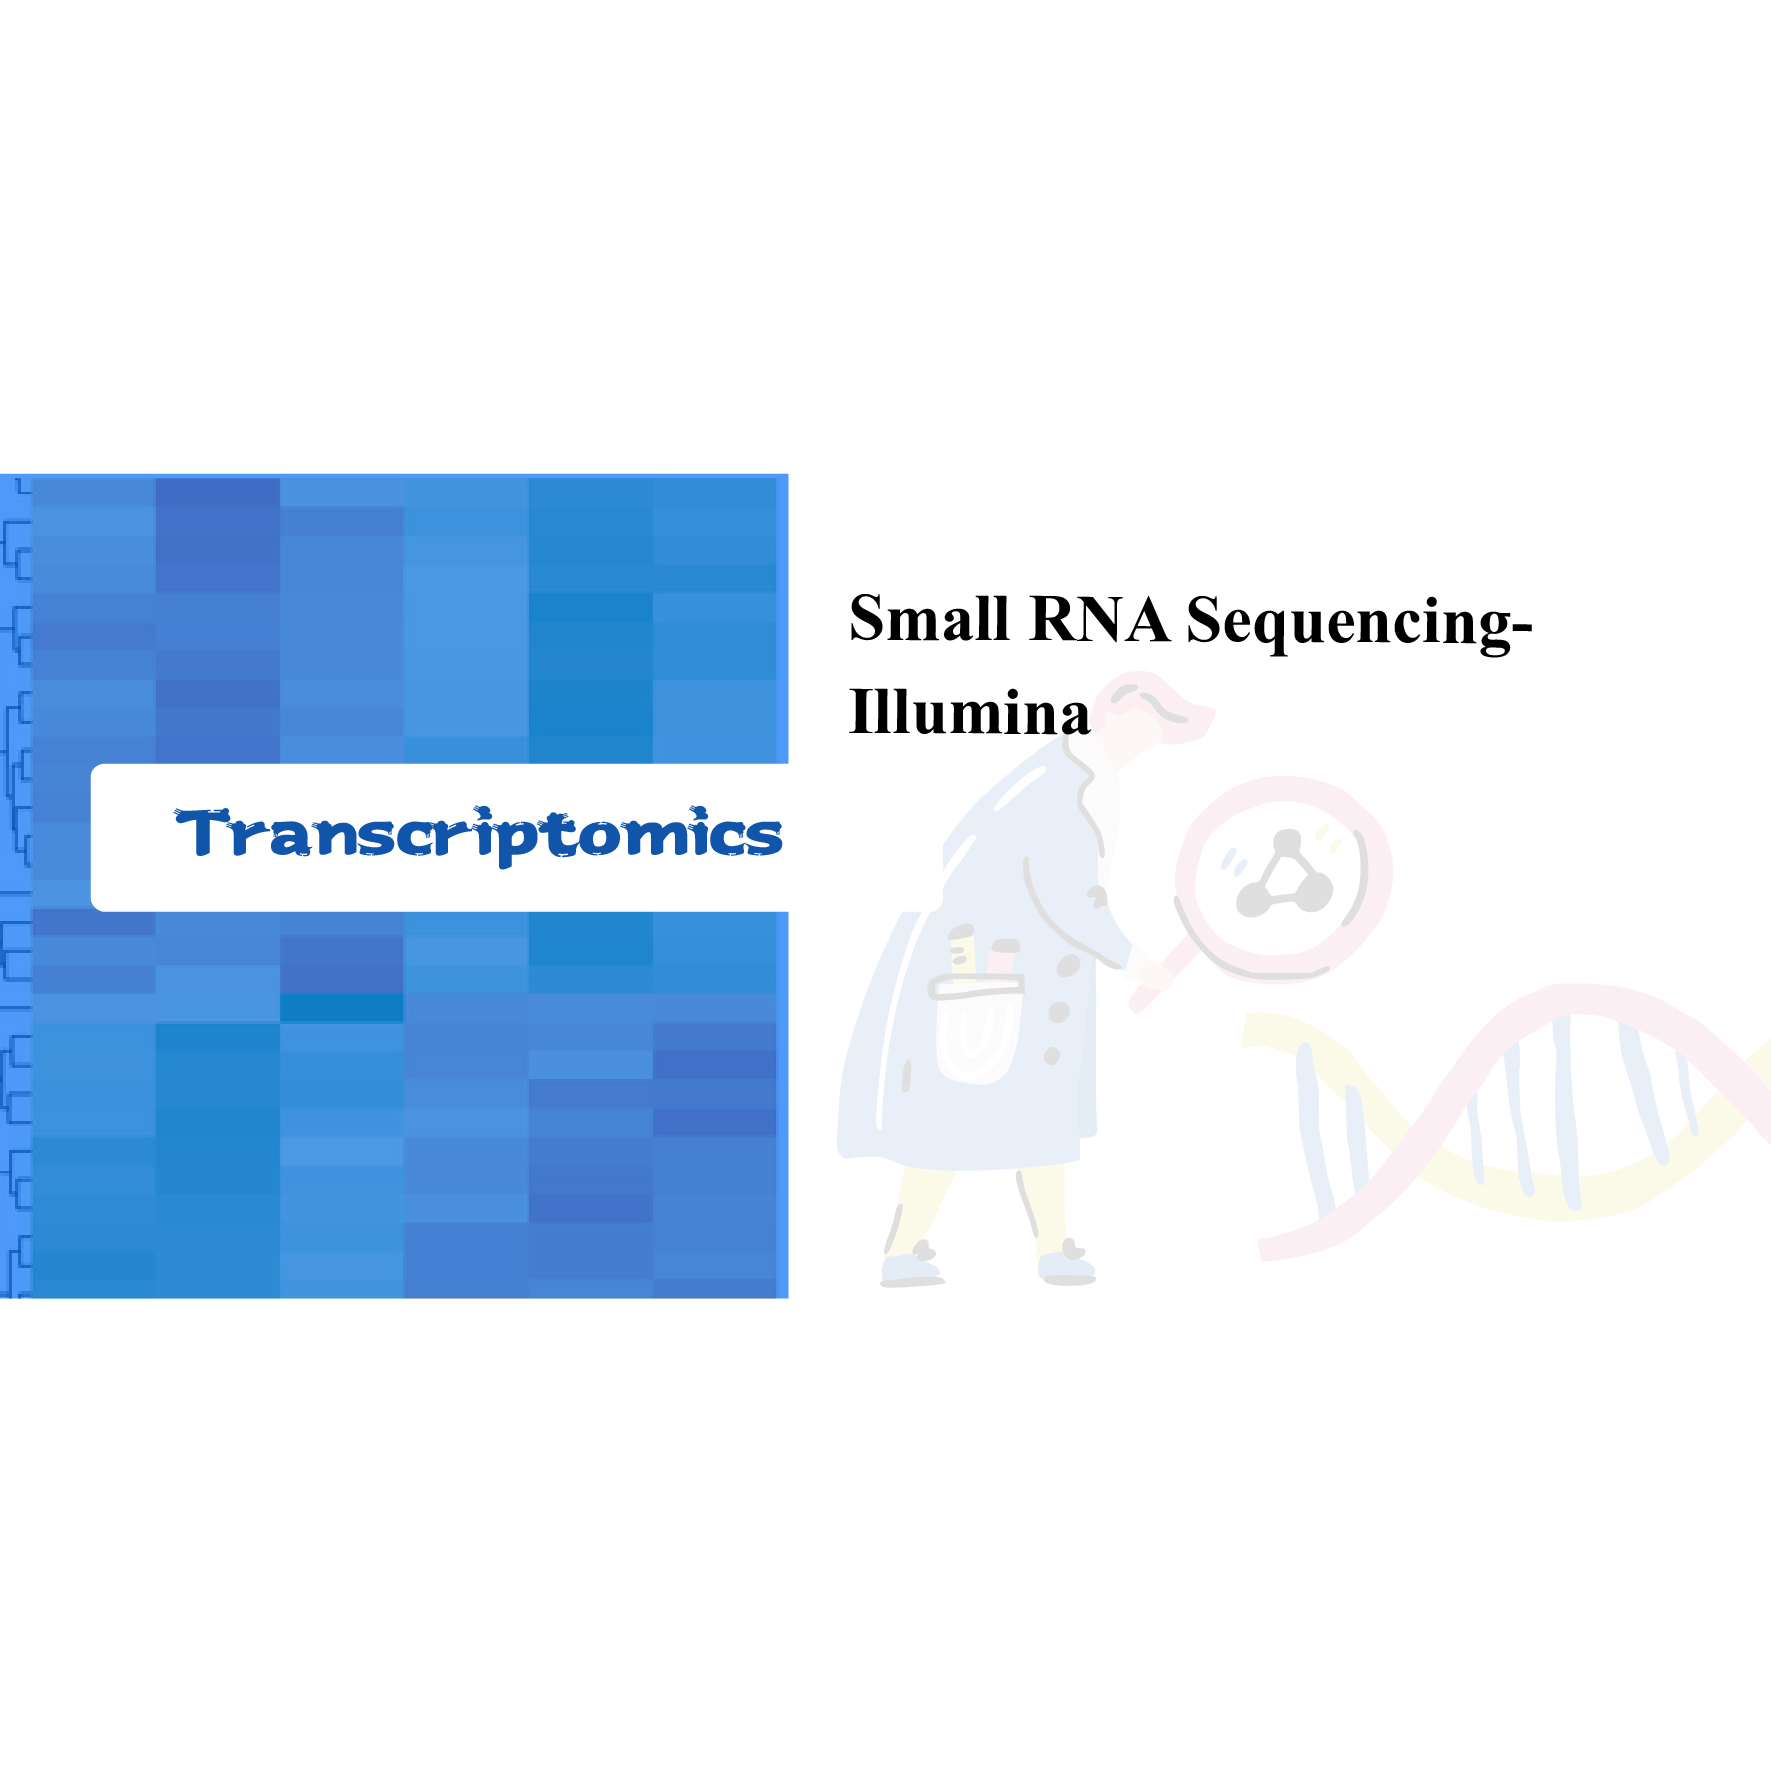 Small RNA sequencing-Illumina